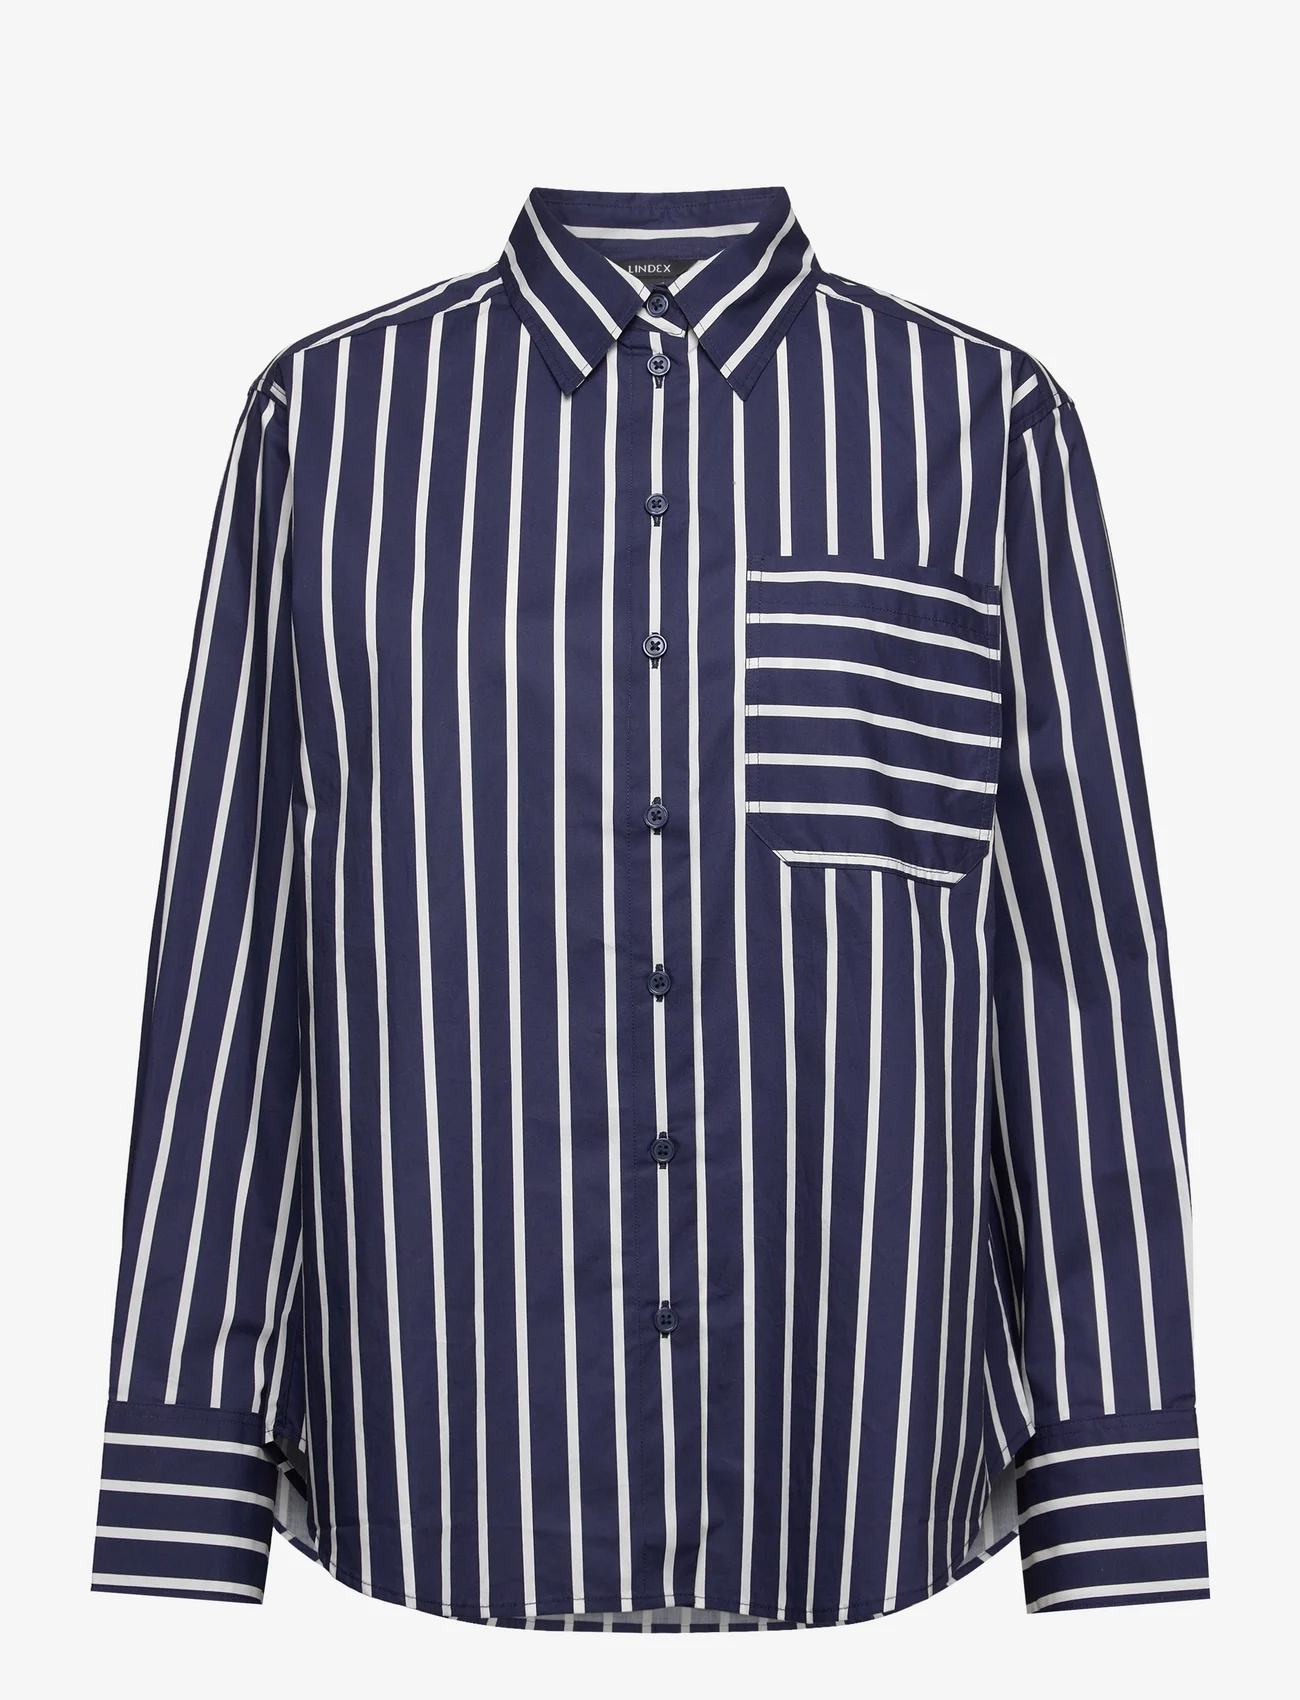 Lindex - Shirt April - overhemden met lange mouwen - dark blue - 0